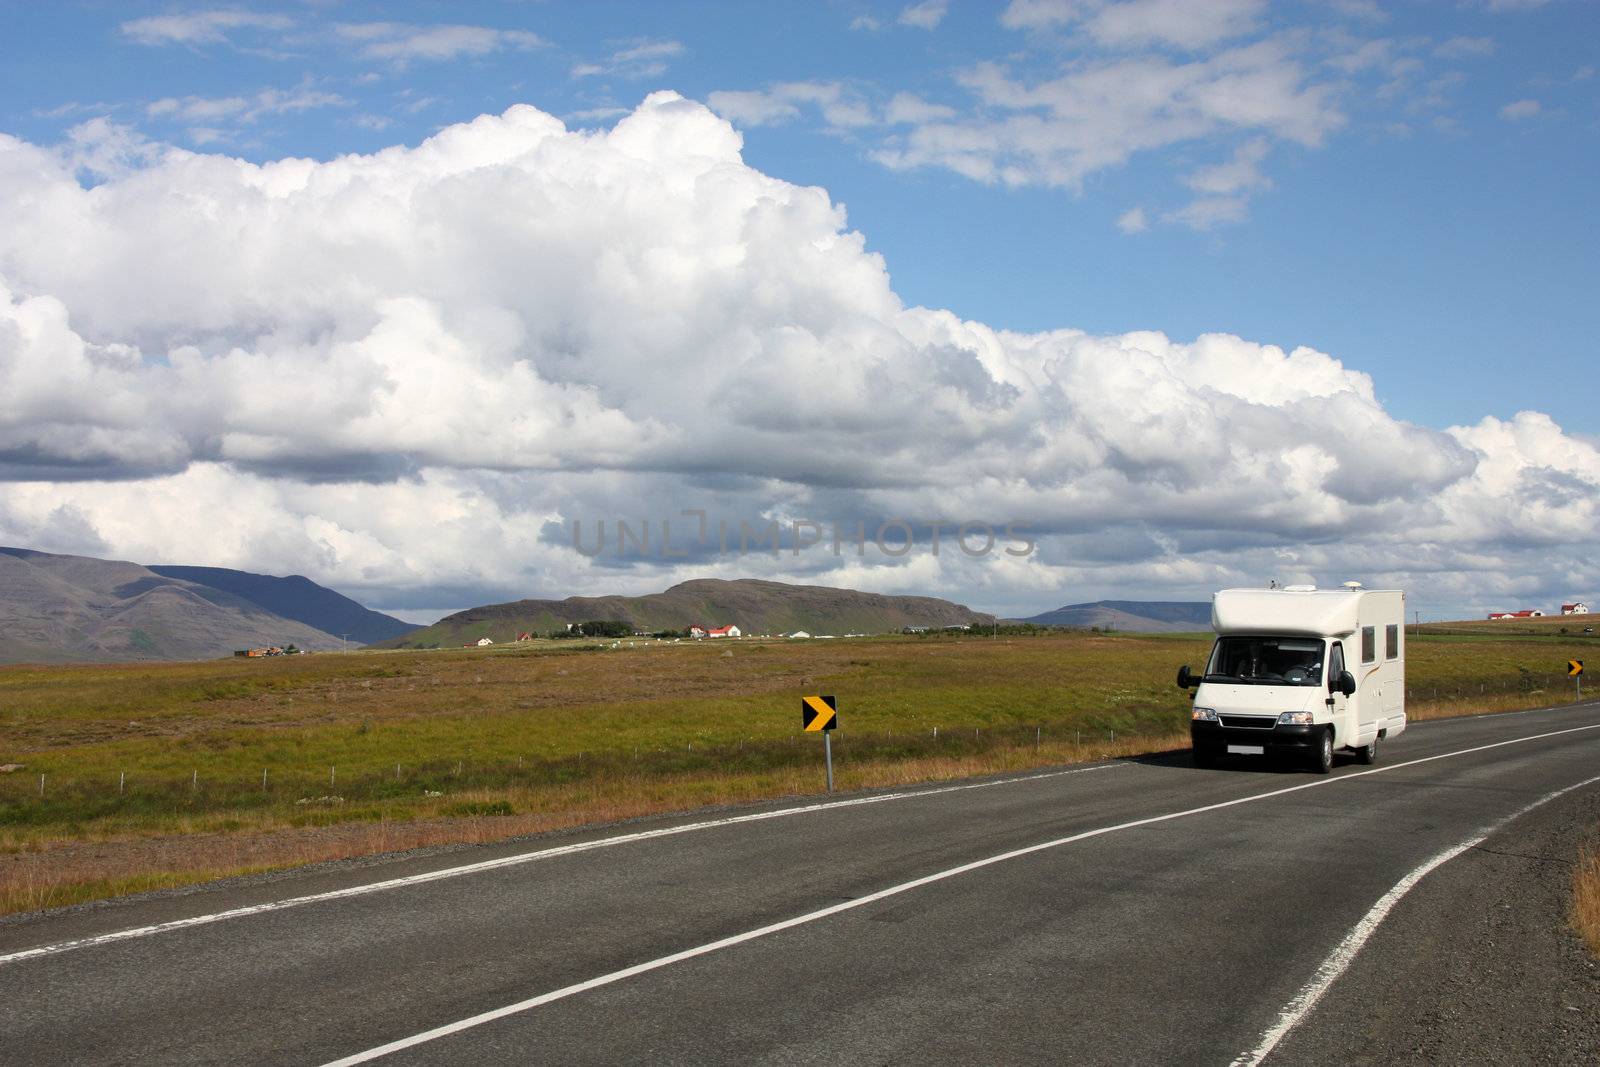 Generic motorhome, recreational vehicle in Iceland. Camper van on the road next to Hvalfjordur.